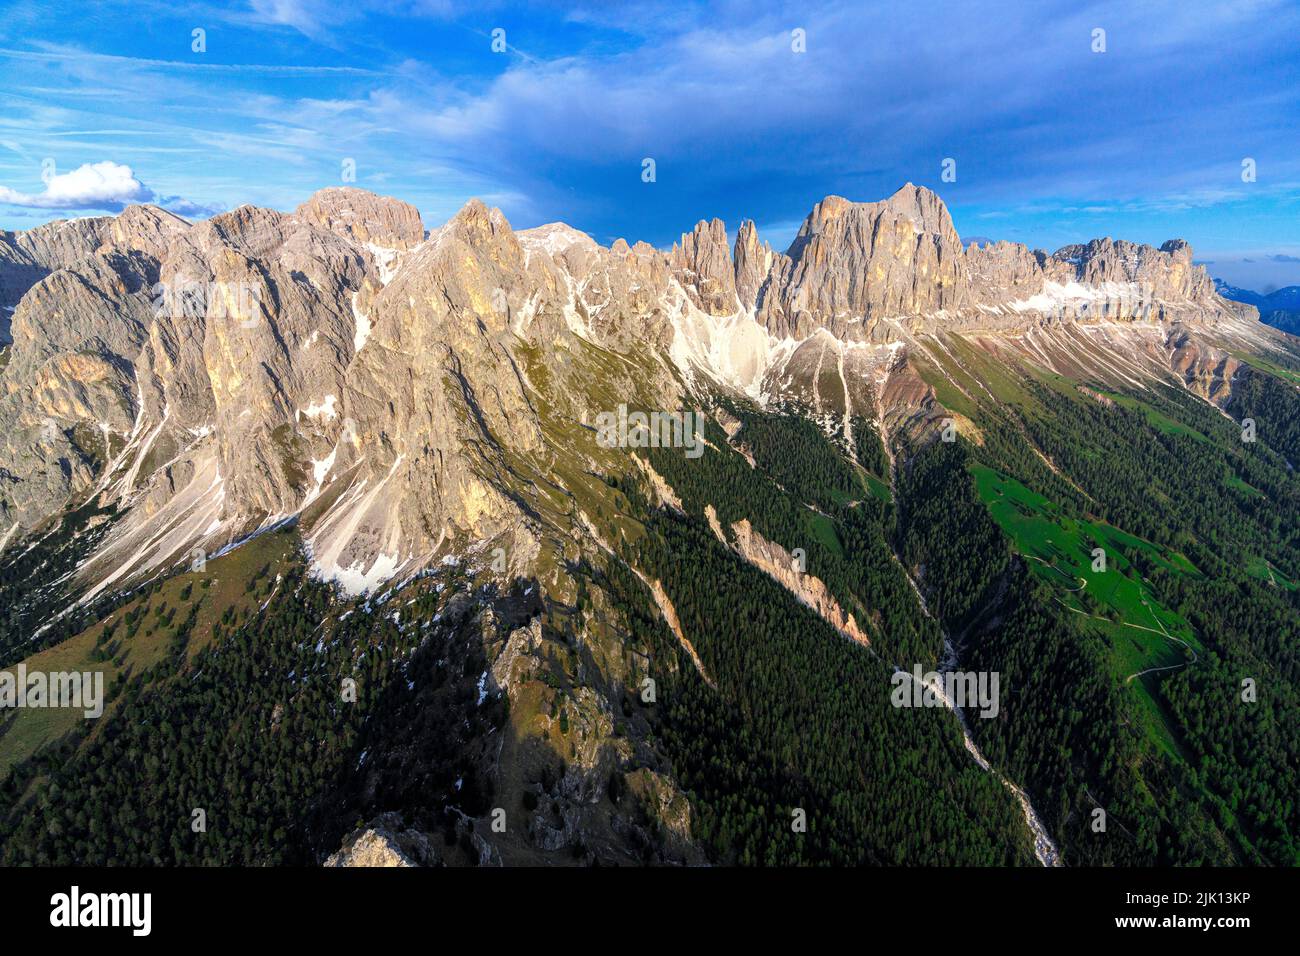 Aerial view of Cima Catinaccio Rosengarten, Torri Del Vajolet and Catinaccio d'Antermoia peaks, Dolomites, South Tyrol, Italy, Europe Stock Photo